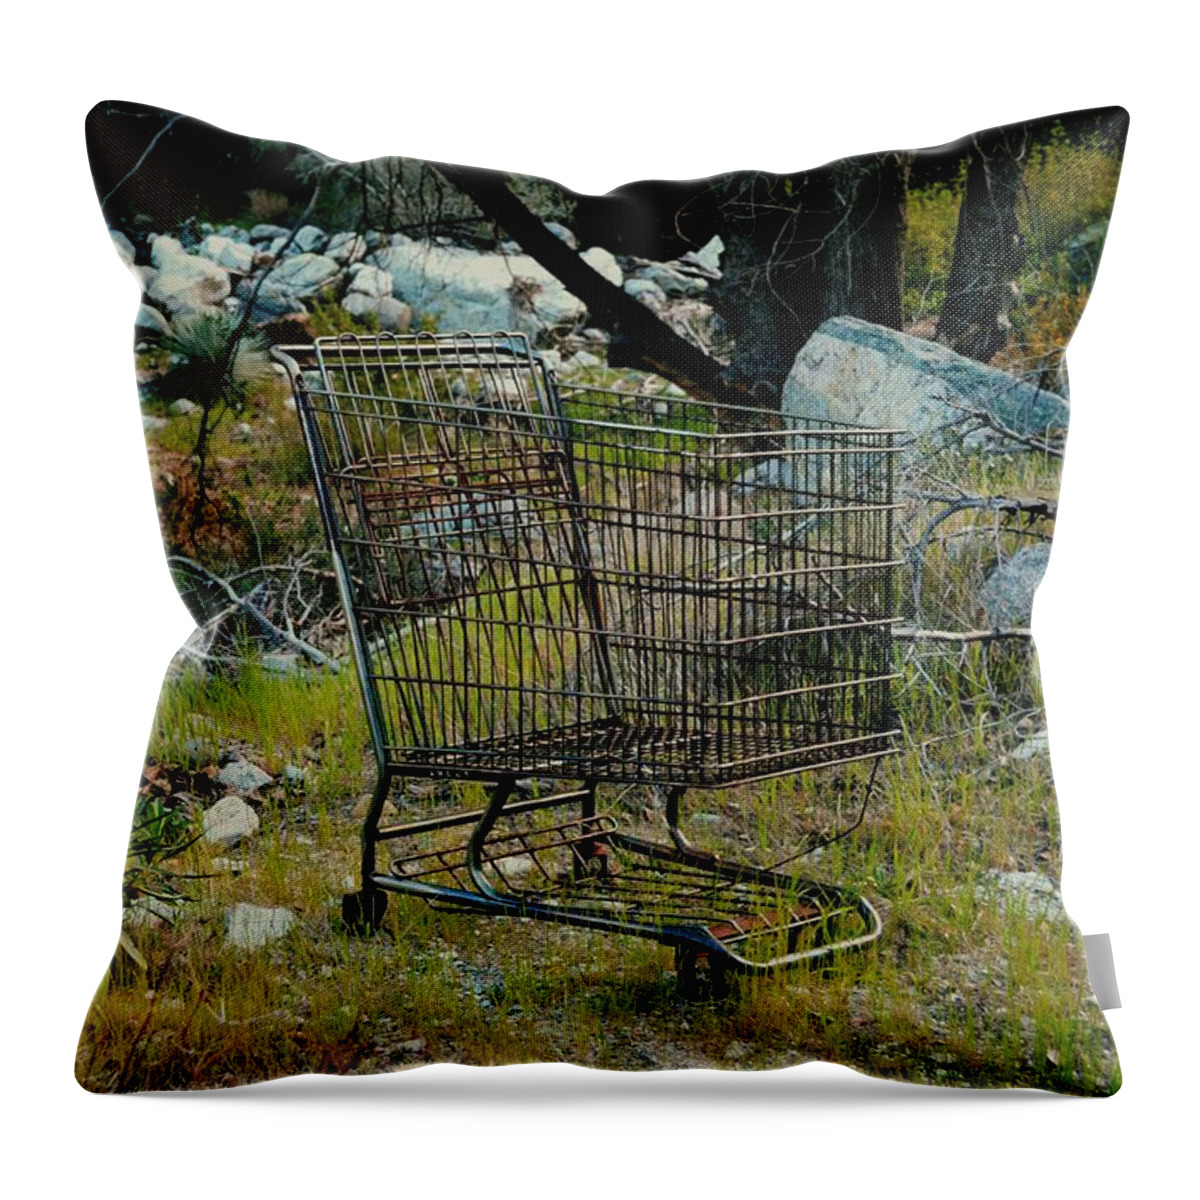 Shopping Cart Throw Pillow featuring the photograph Boulder Market by Laureen Murtha Menzl